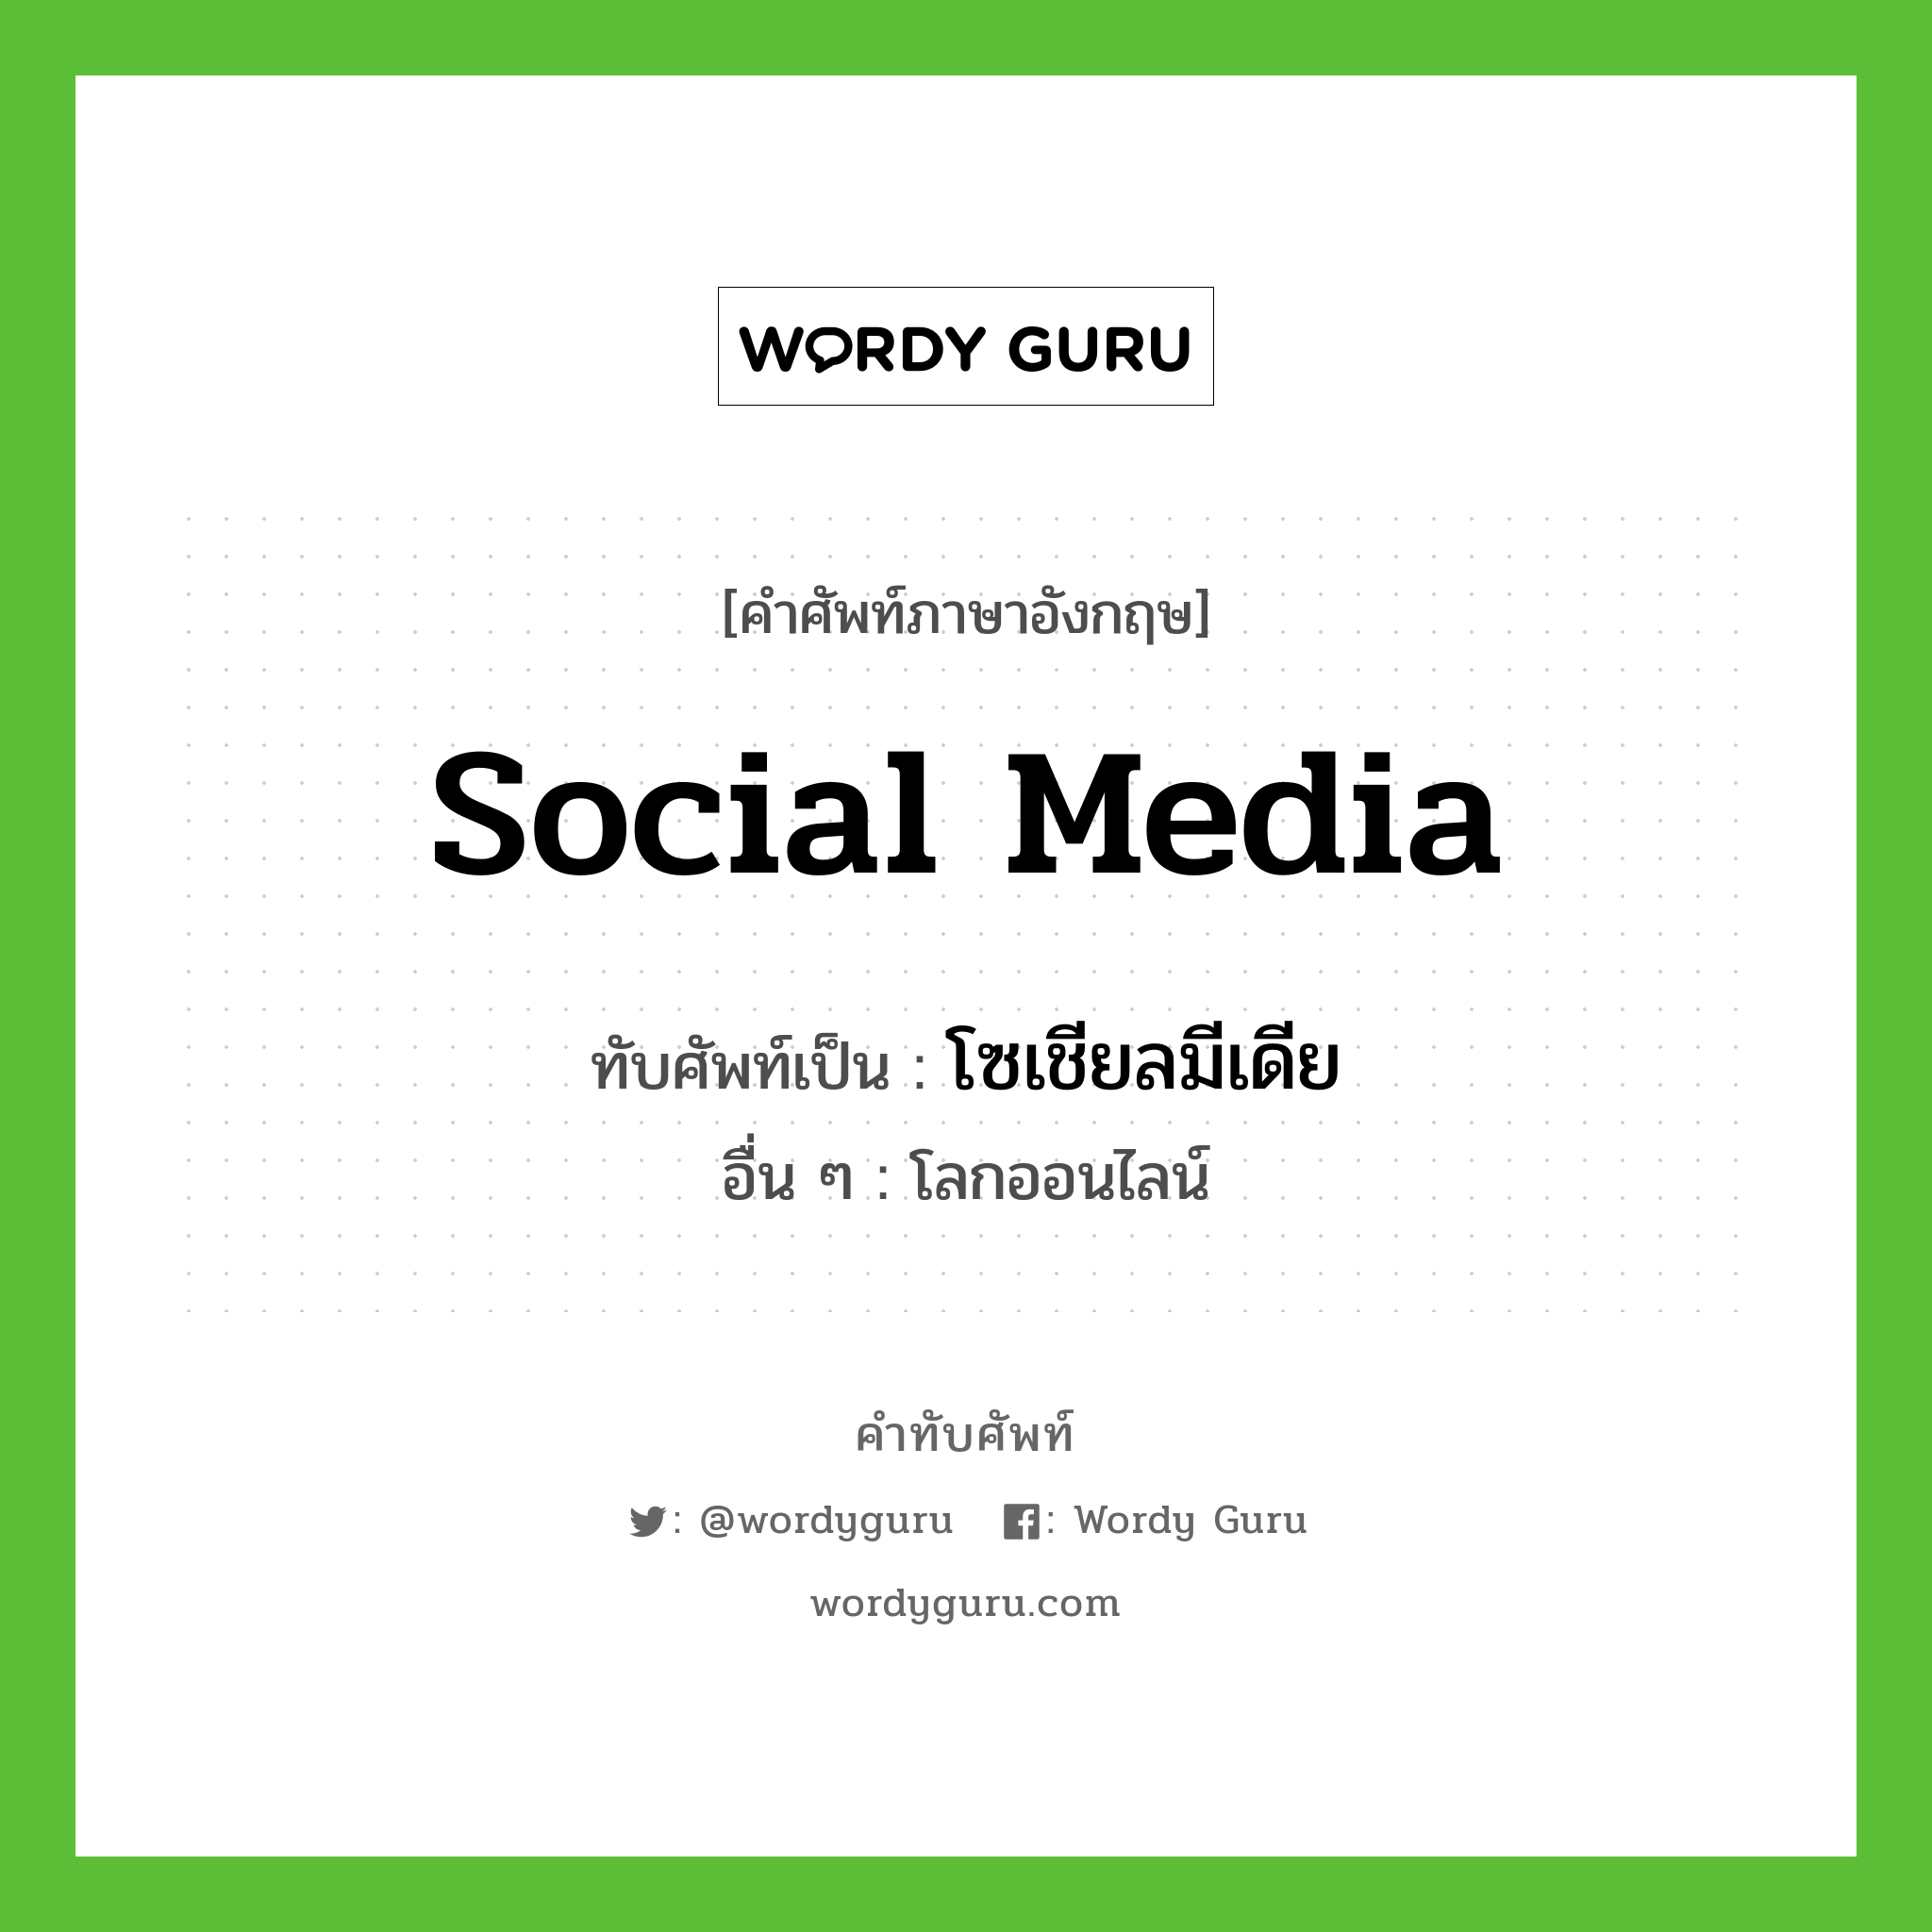 Social Media เขียนเป็นคำไทยว่าอะไร? | คำทับศัพท์